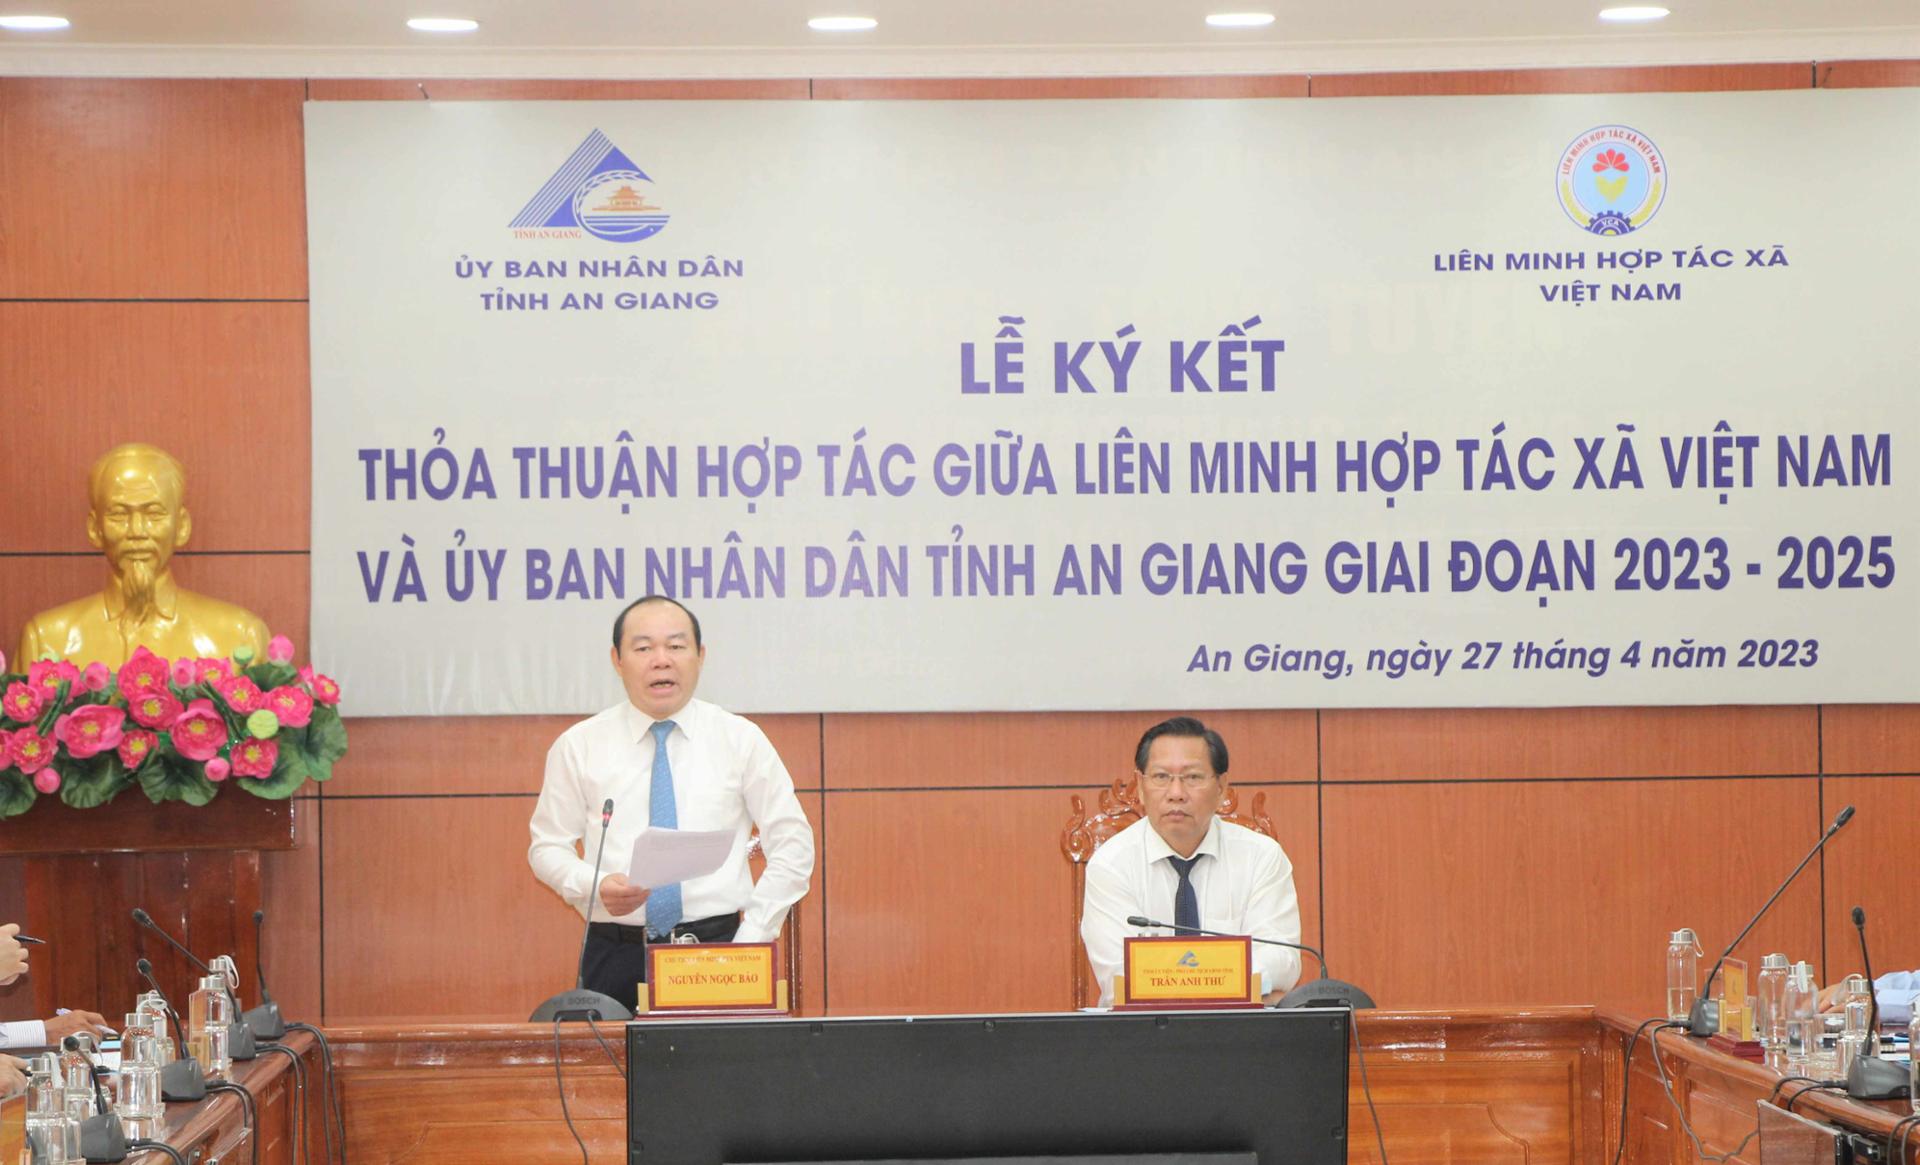 Chủ tịch Liên minh Hợp tác xã Việt Nam Nguyễn Ngọc Bảo đánh giá cao việc ký kết hợp tác